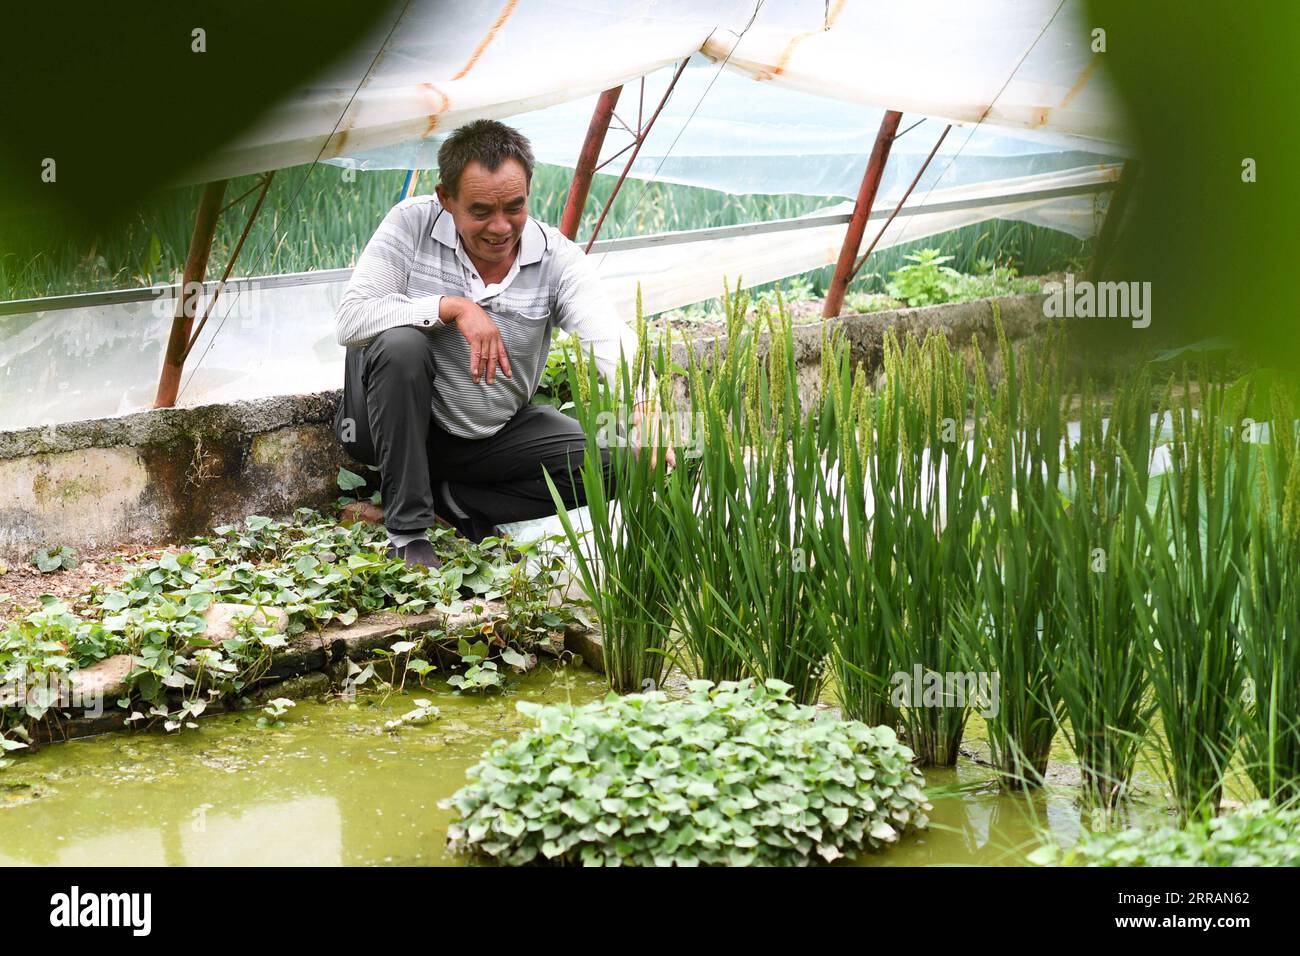 210809 -- YUSHU, 9 août 2021 -- Wei Jinming vérifie la croissance du riz dans sa plantation de légumes du village de Xinzhai, canton de Jiegu, préfecture autonome tibétaine de Yushu dans la province de Qinghai, au nord-ouest de la Chine, 5 août 2021. Brocoli, poireaux, riz... Tous poussent dans leur haute saison dans la plantation de légumes de Wei Jinming au village de Xinzhai, près de 4 000 mètres au-dessus du niveau de la mer. Wei, originaire de la province du Henan en Chine centrale, a déménagé à Jiegu et a commencé sa plantation avec un morceau de terres agricoles sous contrat. Une pelle après l'autre, il a déplacé des roches et des sables là, et remplacé par du sol de nuit an Banque D'Images